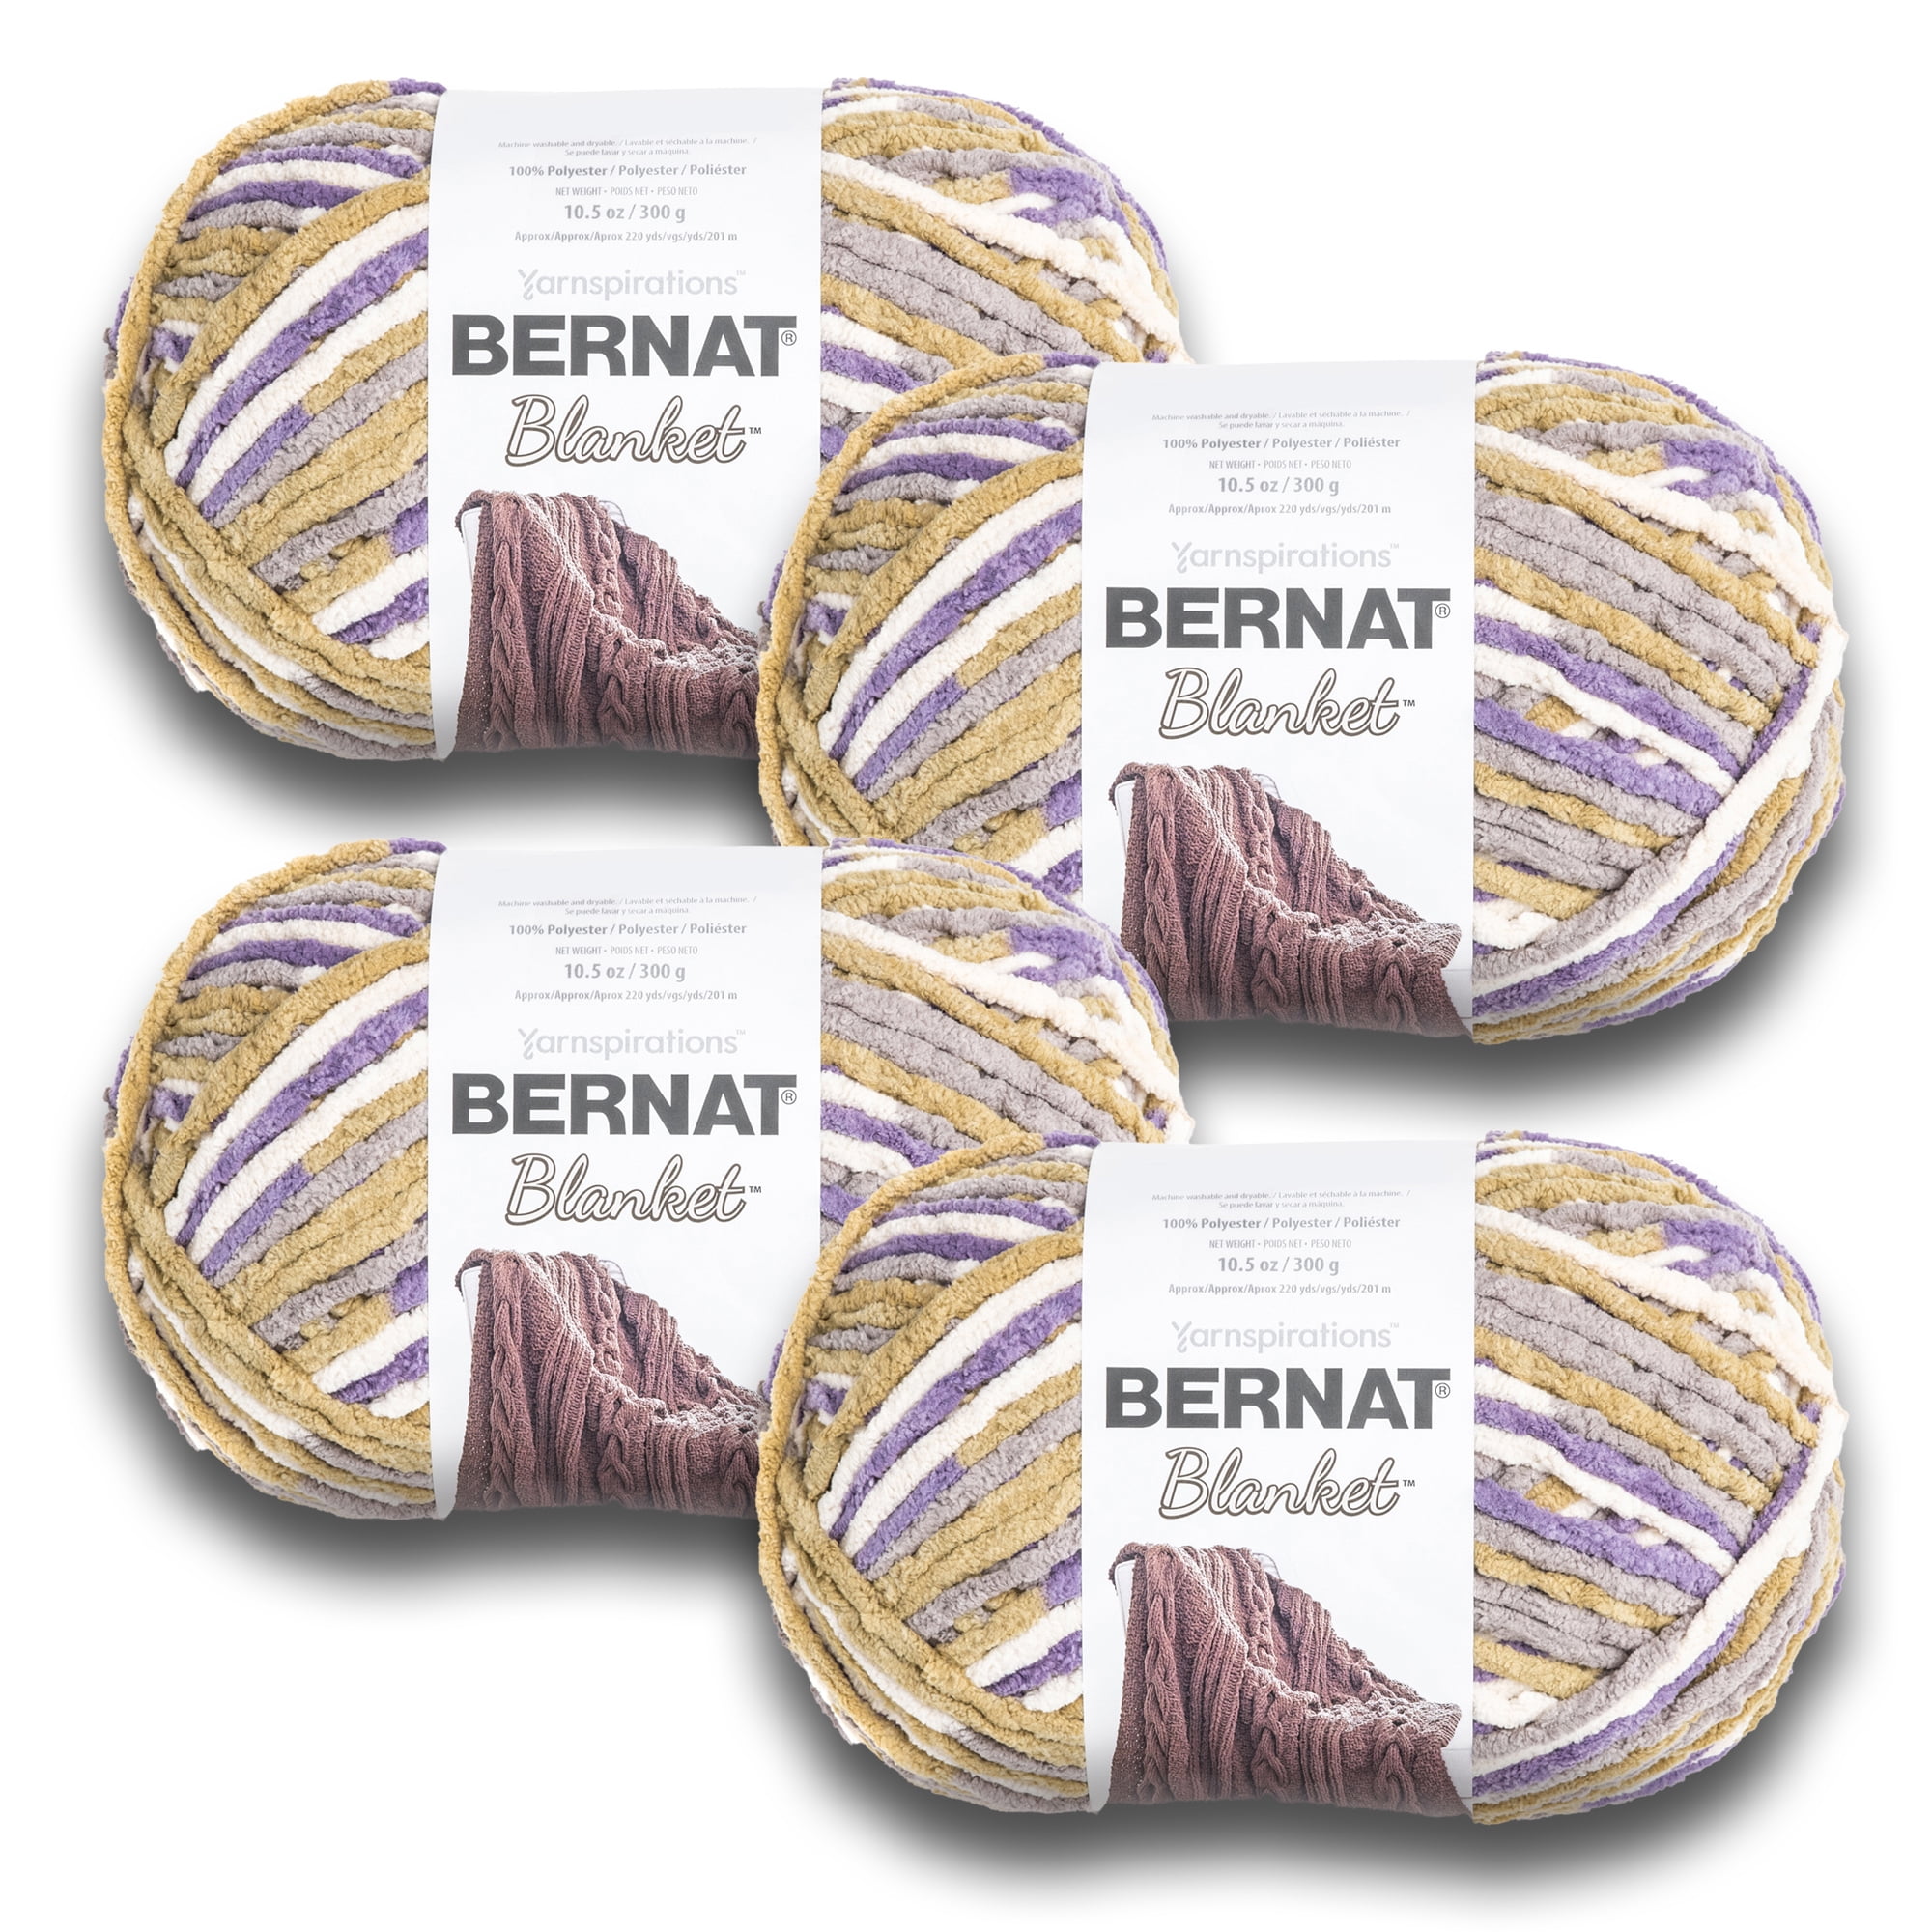 Bernat Blanket #6 Super Bulky Polyester Yarn, Lilac Bush 10.5oz/300g, 220 Yards (4 Pack), Size: Super Bulky (6)